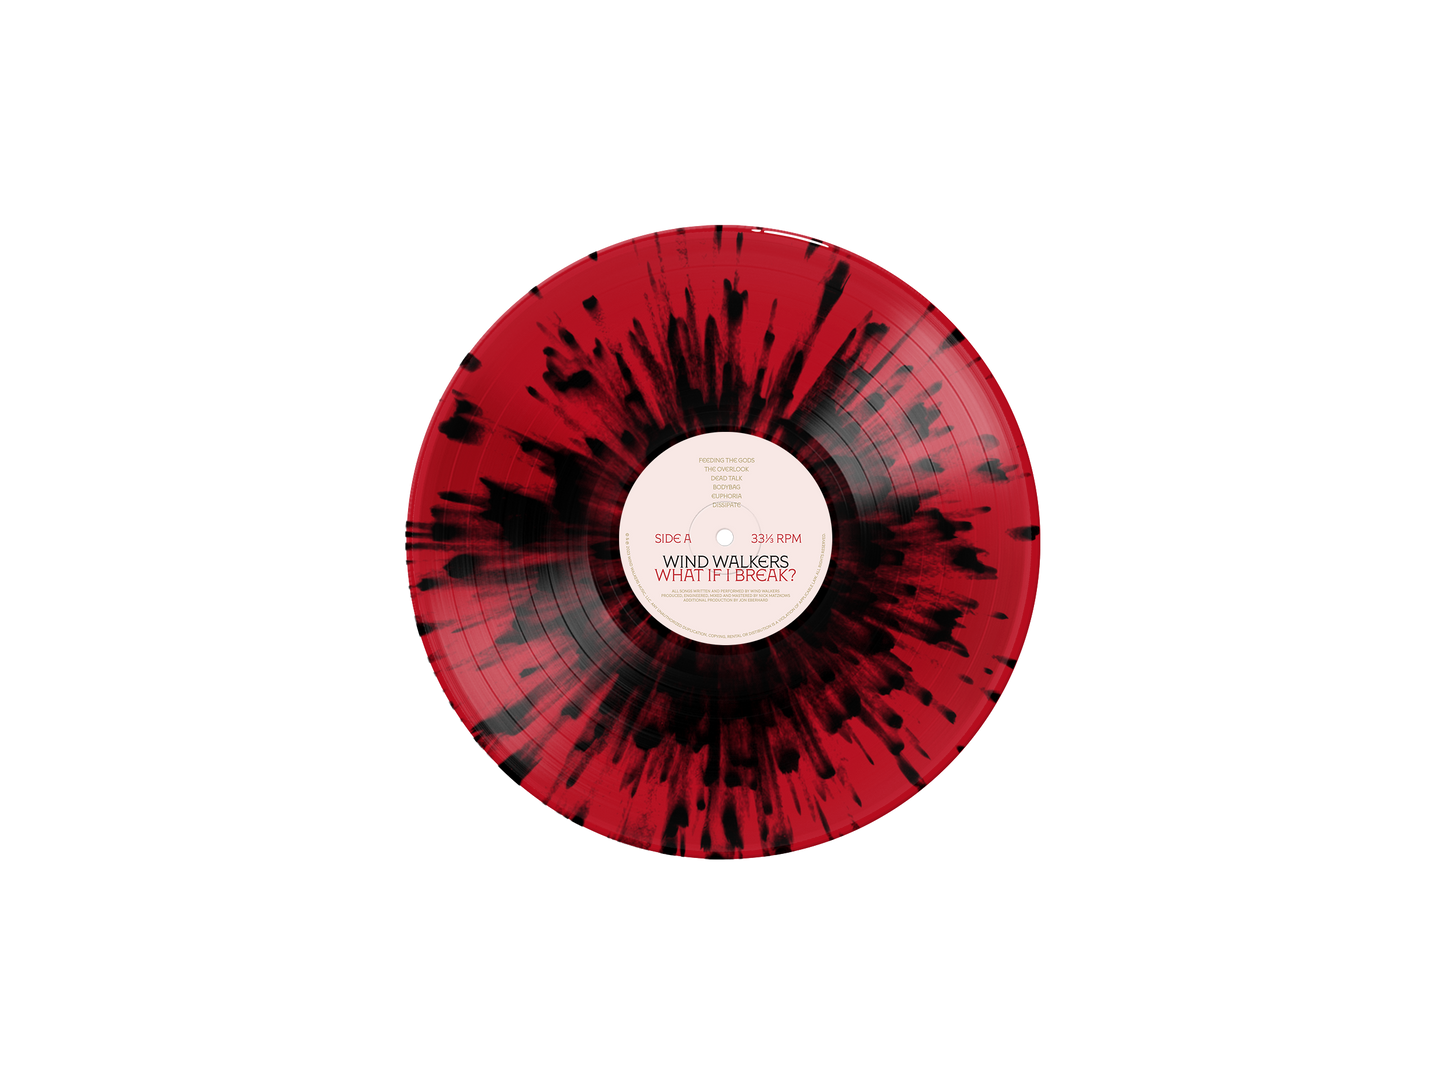 What If I Break? Ruby Red & Black Splatter Vinyl LP